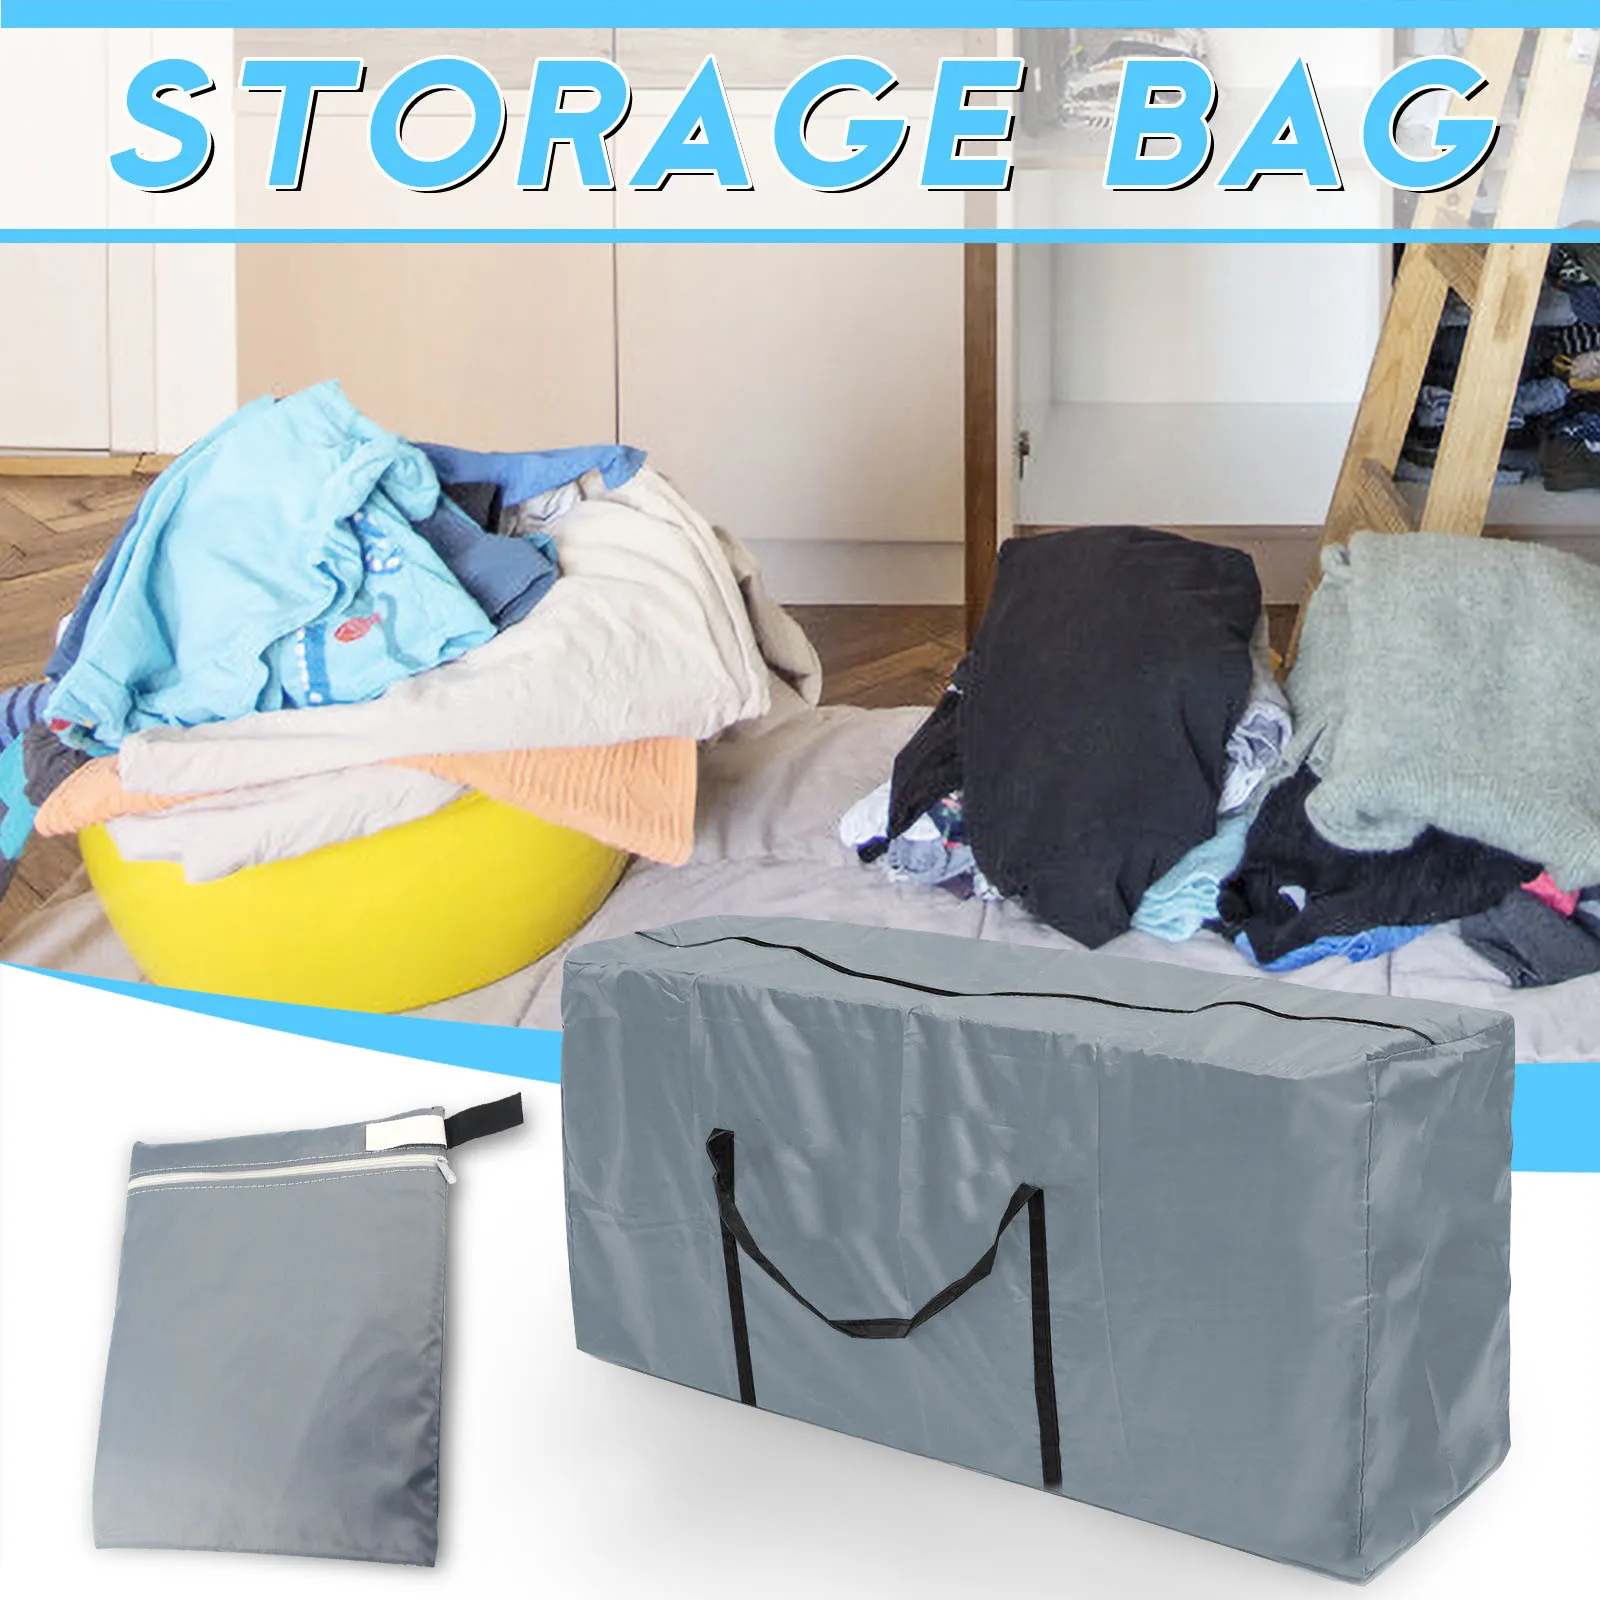 

Большая сумка для хранения с прочной усиленной молнией, водонепроницаемый материал, защищает гардероб, органайзер для одежды, ящики для шкафа